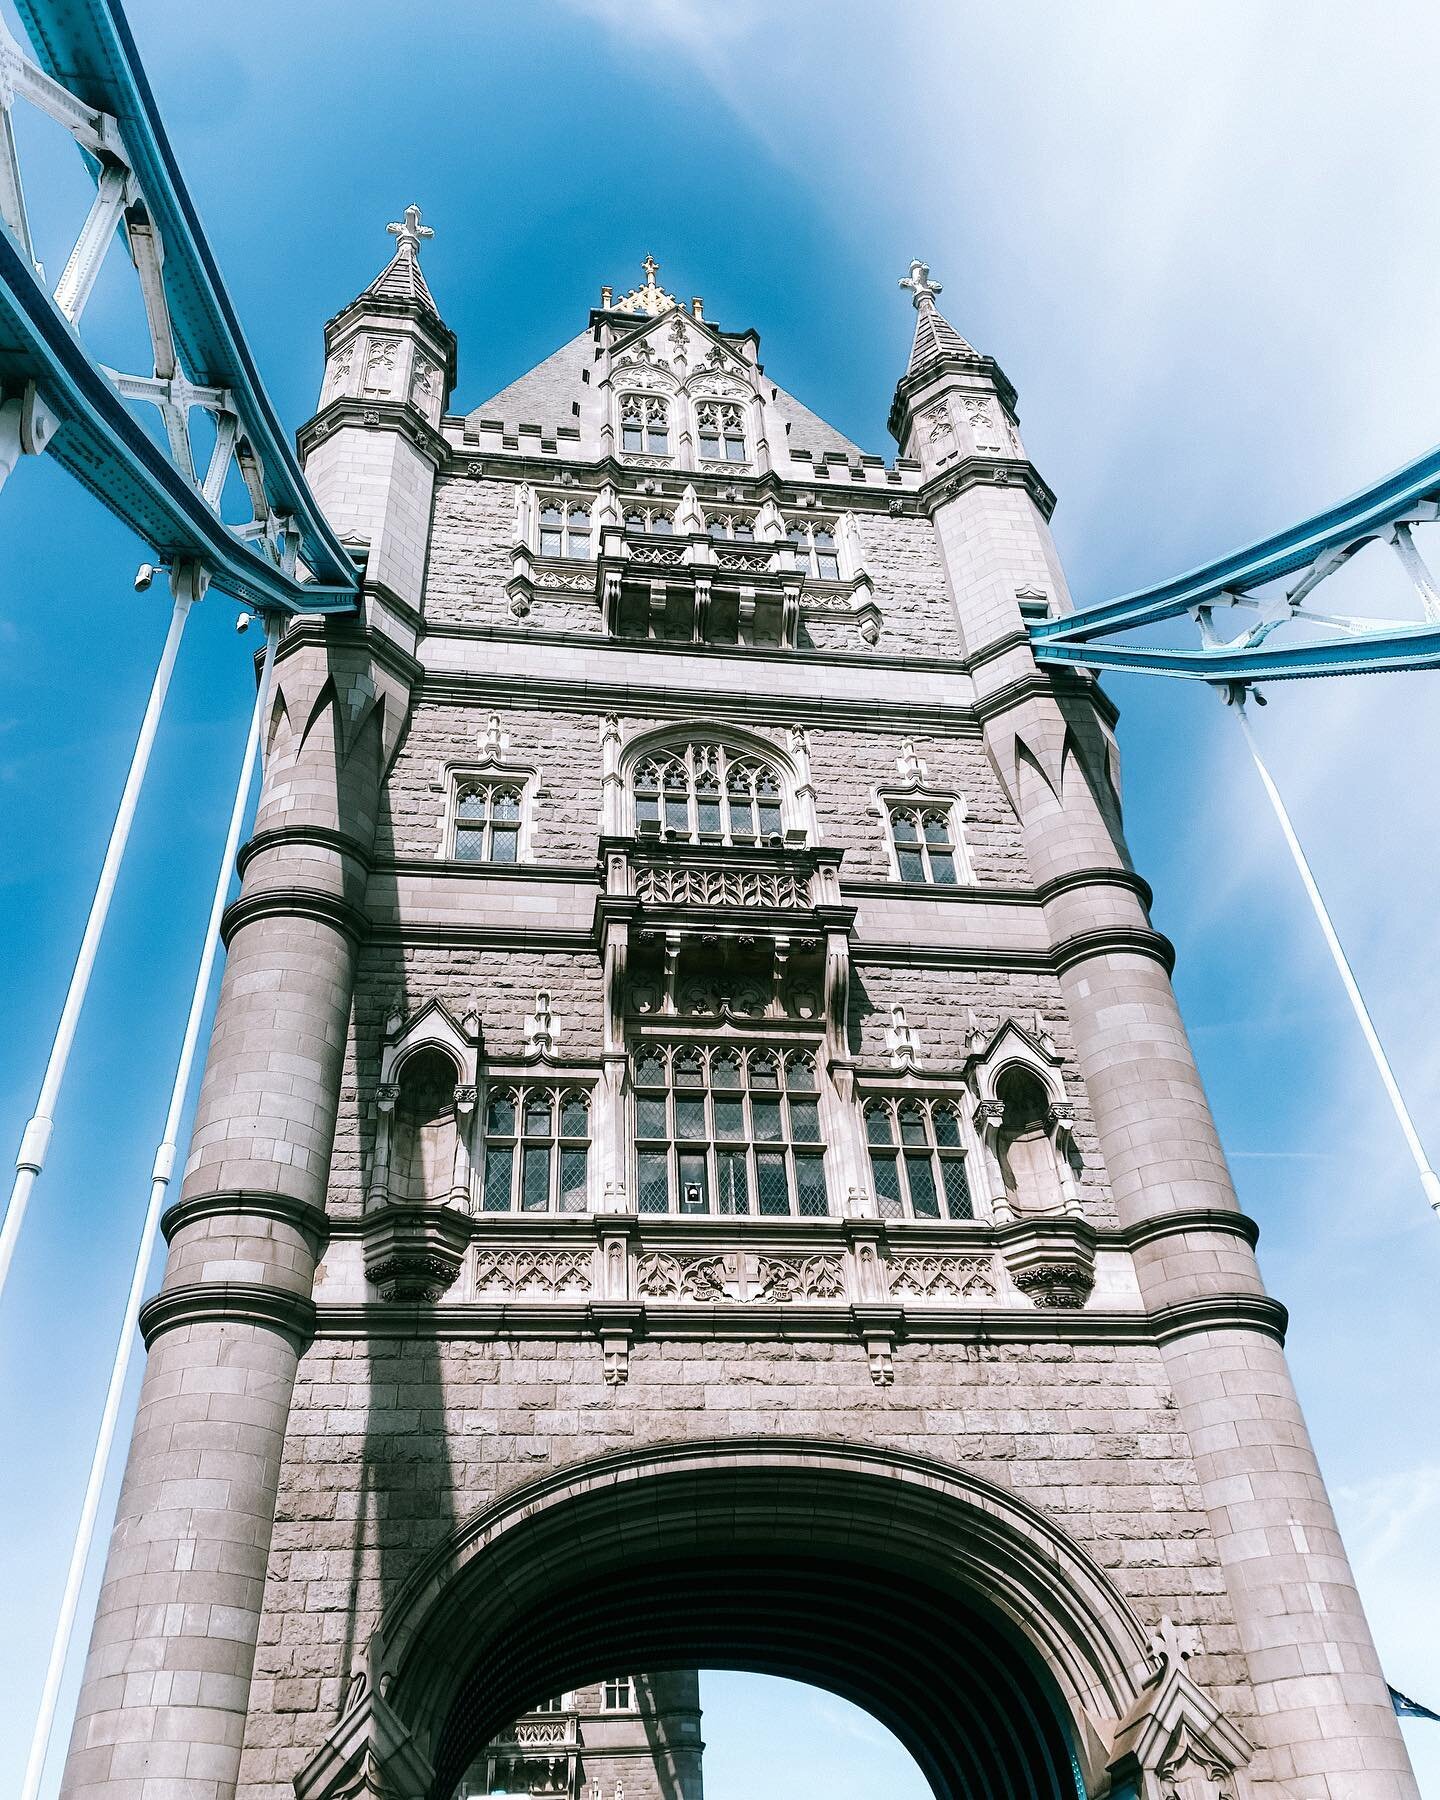 lovely london 🫶🏼
.
.
.
#radtraveler #travelphotography #travel #travelblogger #travelgram #london #uk #england #towerbridge